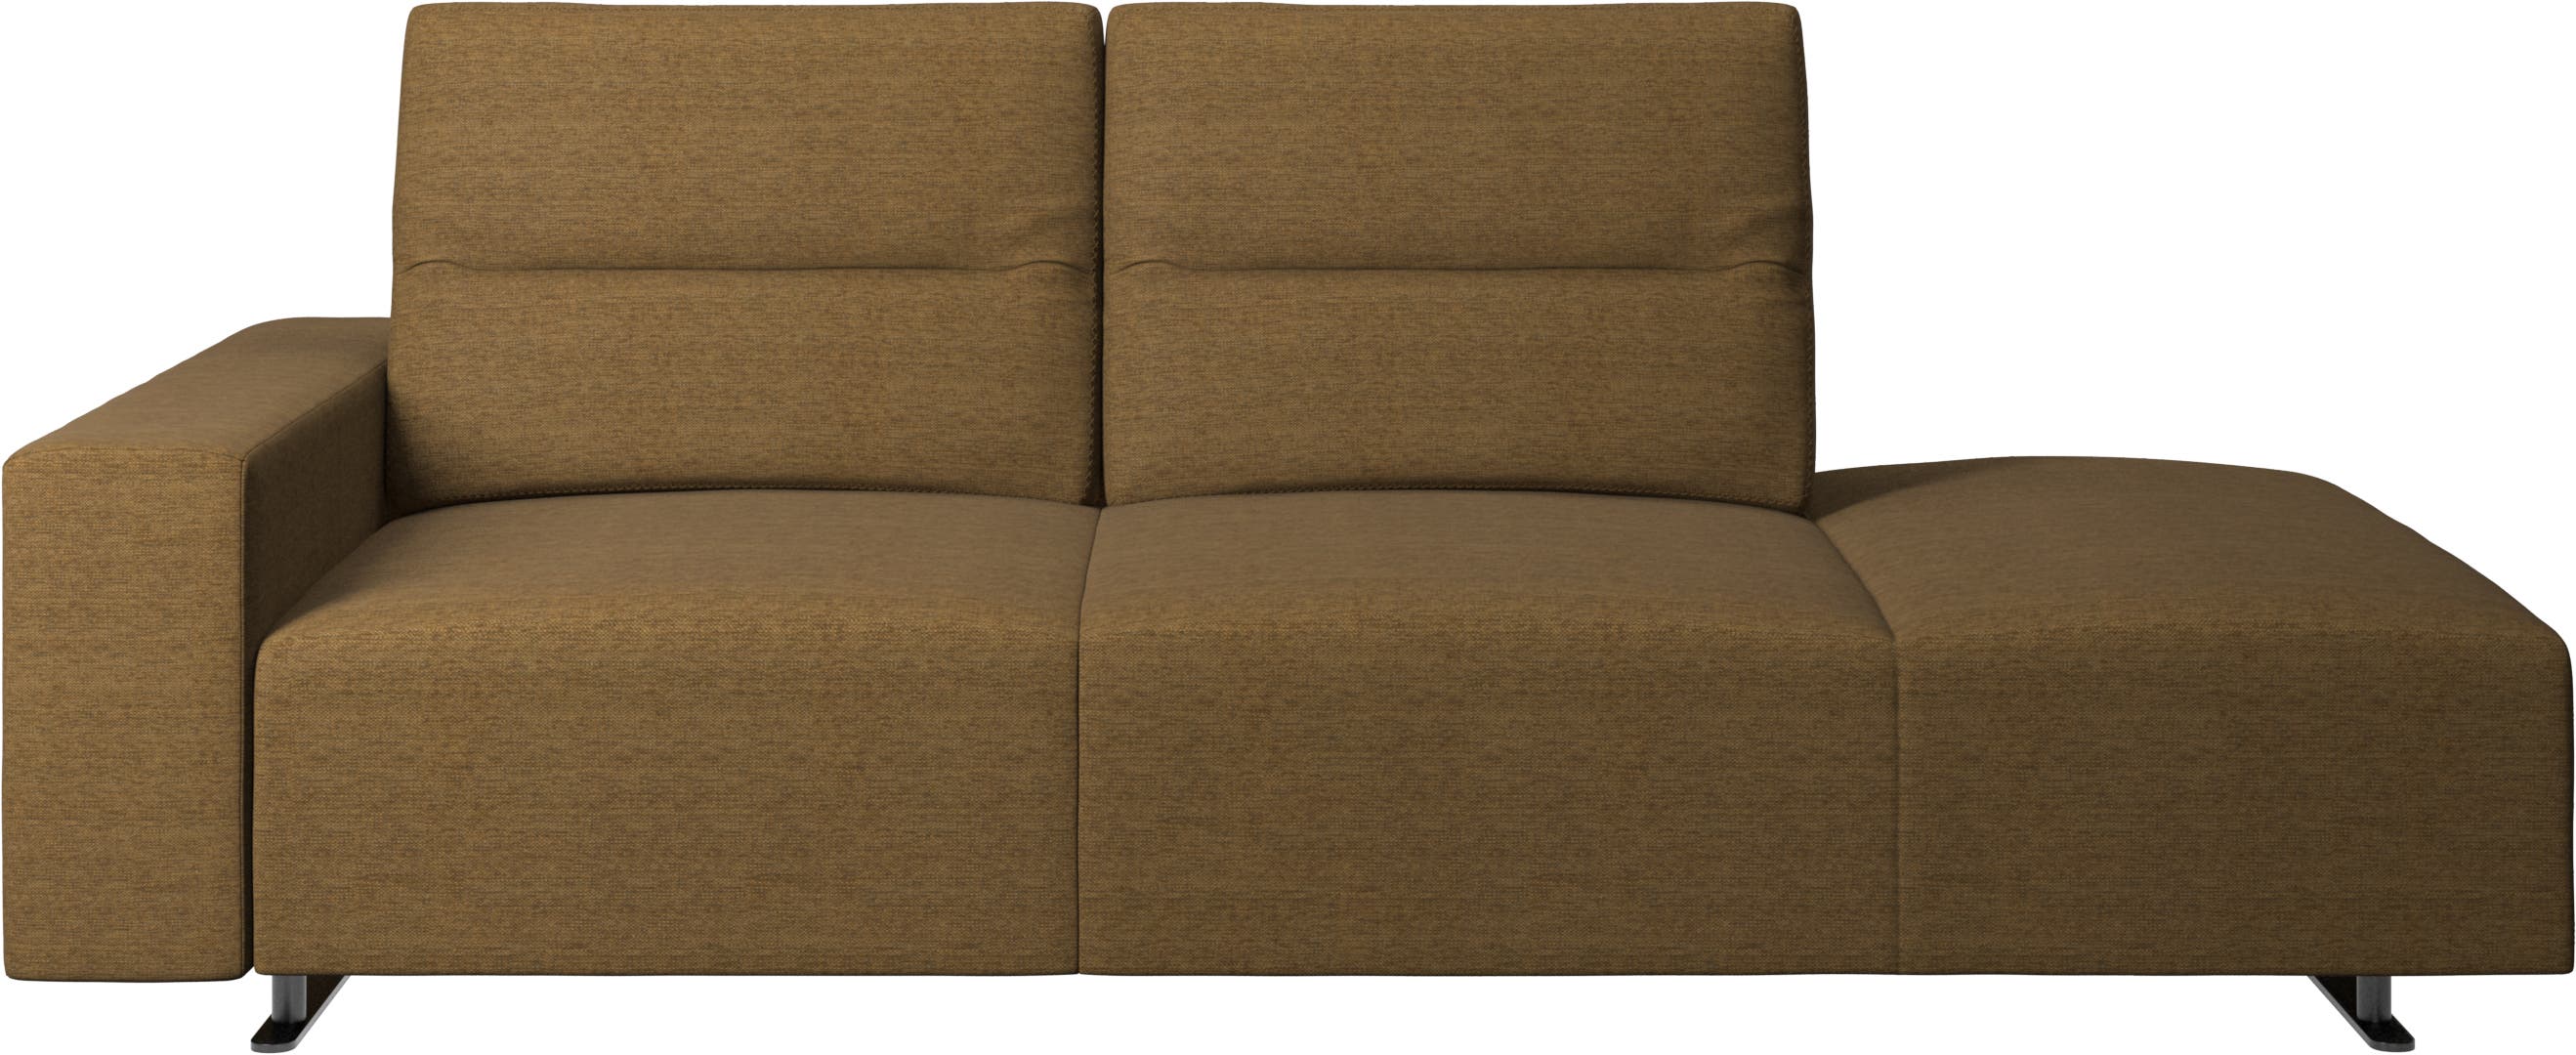 Καναπές Hampton με ρυθμιζόμενη πλάτη και δεξιά μονάδα lounging, αριστερό μπράτσο με αποθηκετικό χώρο